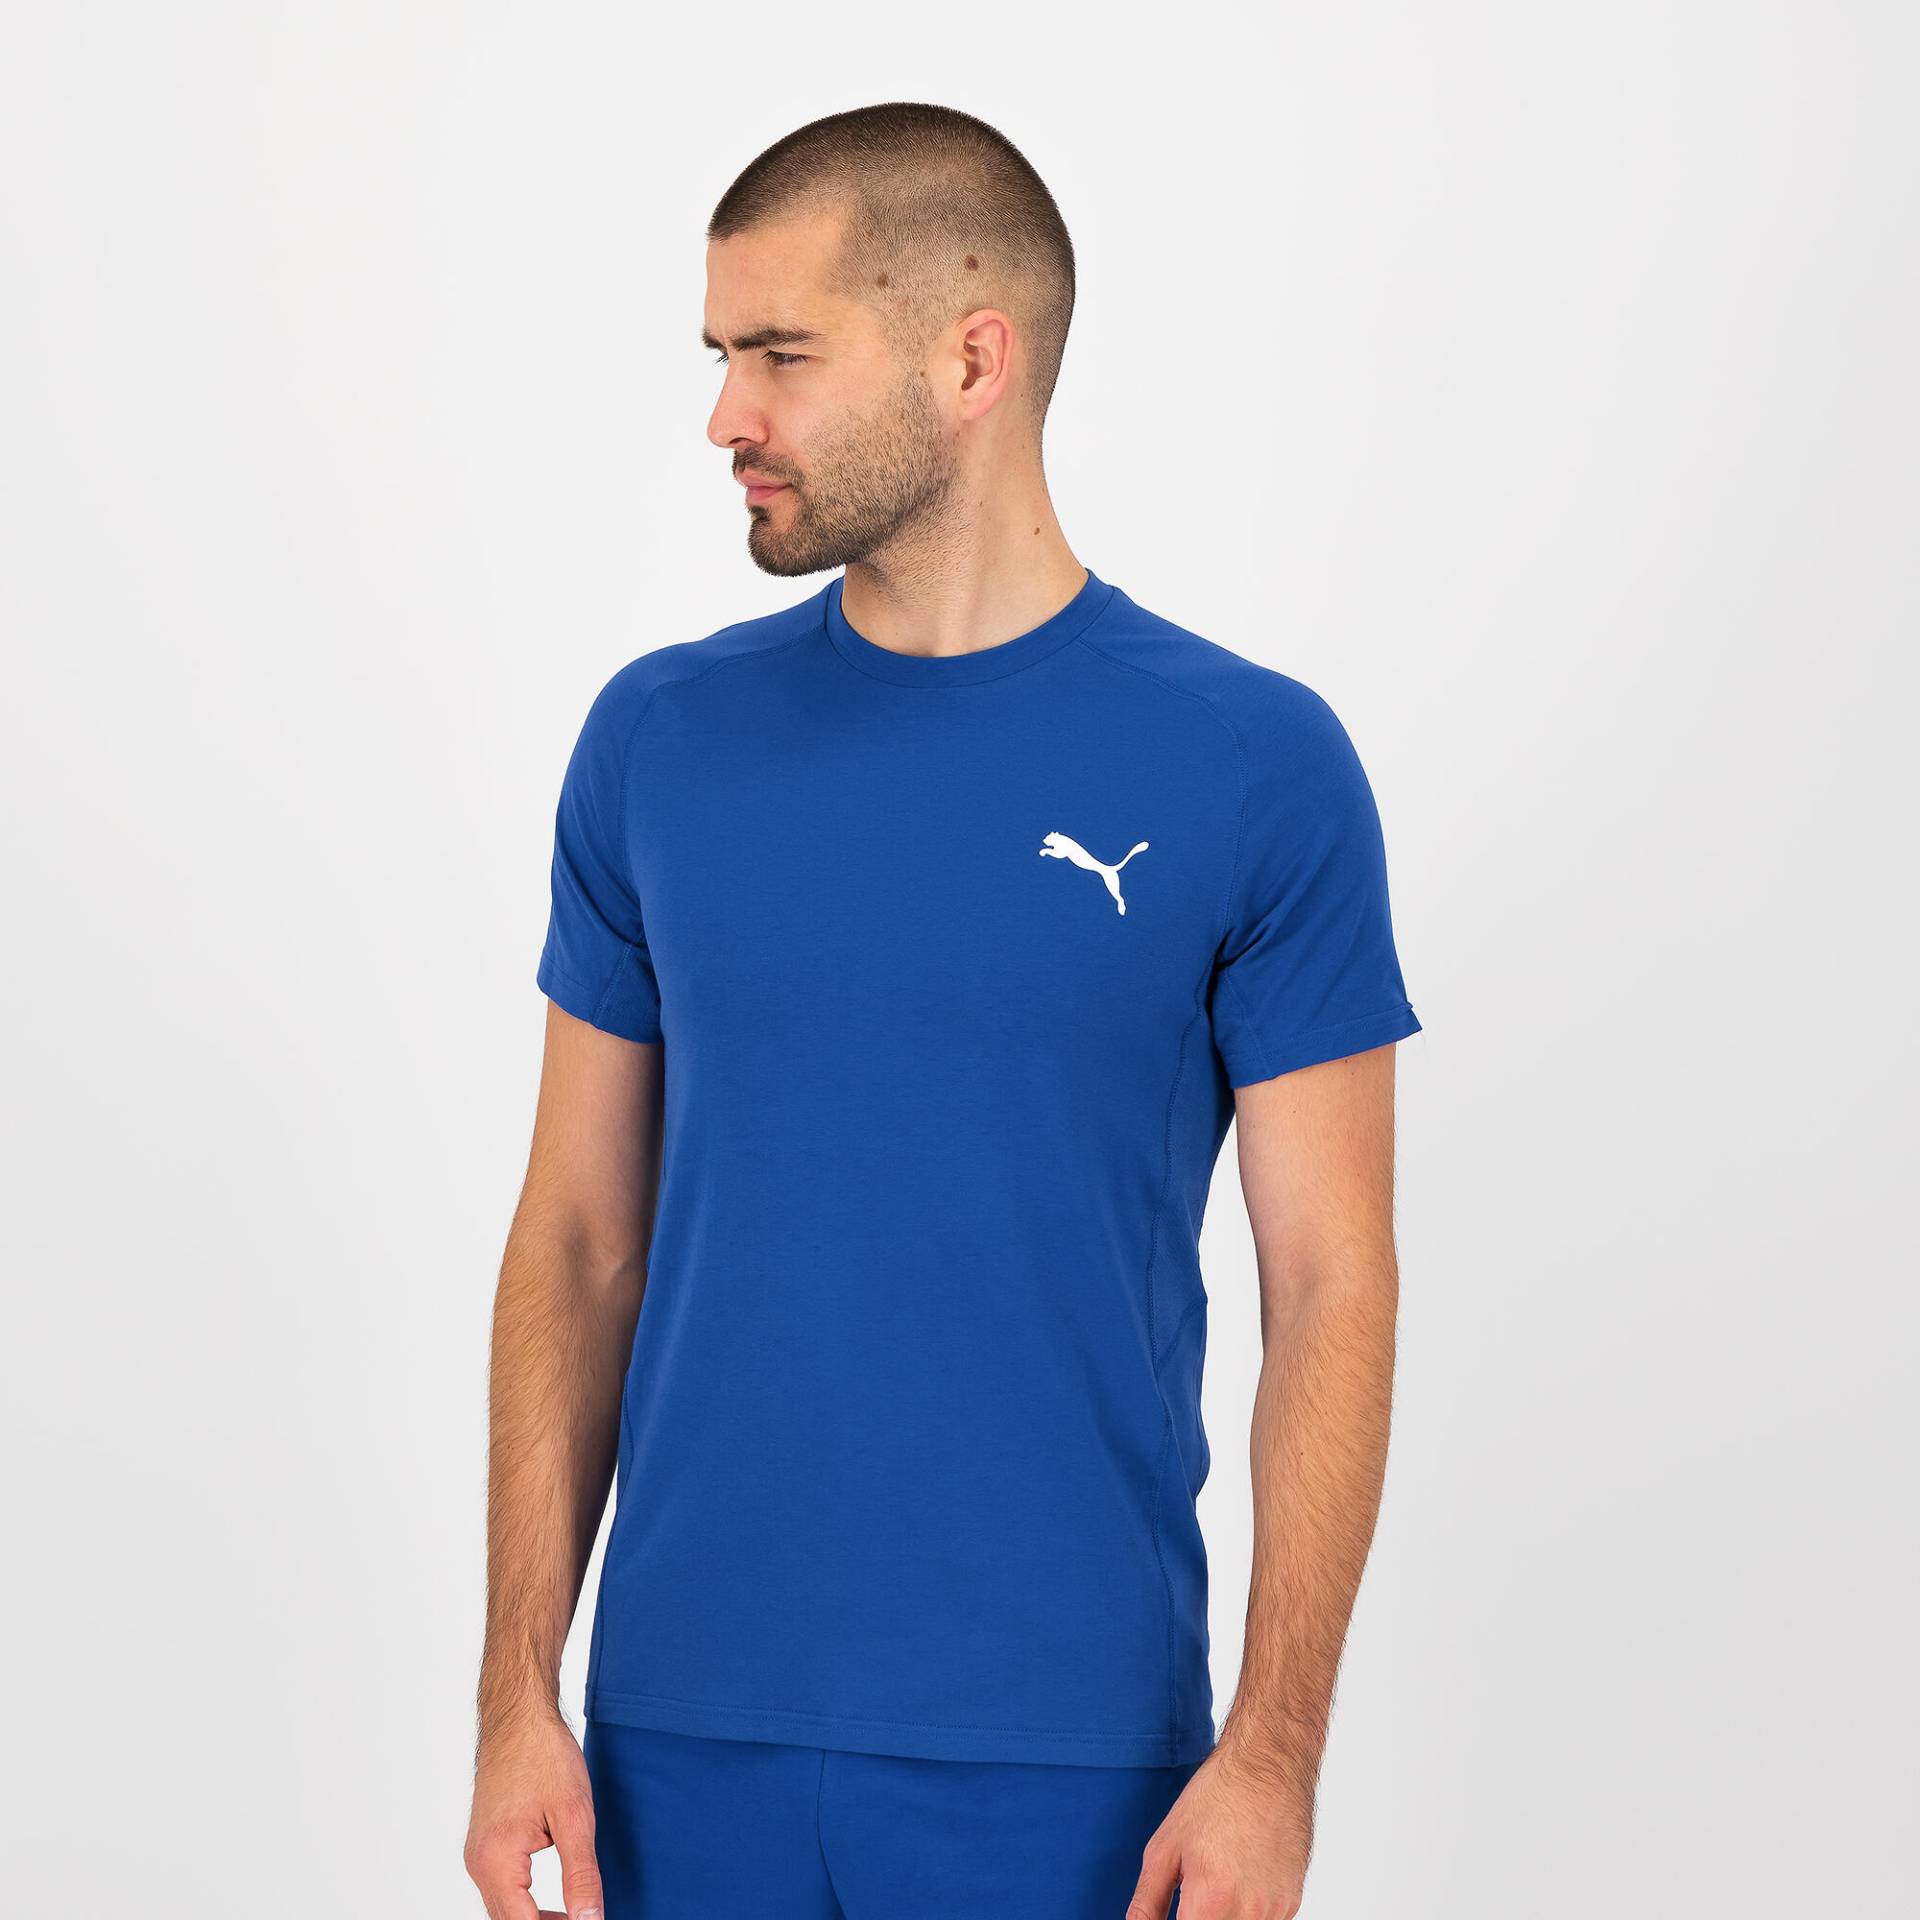 Puma T-Shirt Herren Baumwolle - blau von Puma